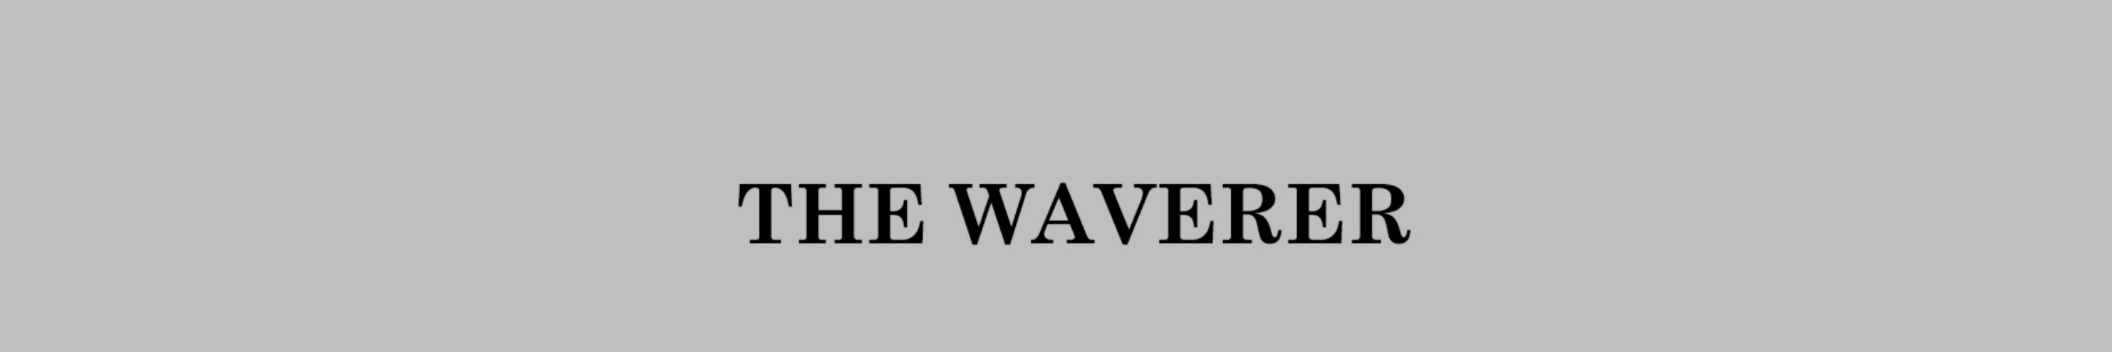 The Waverer